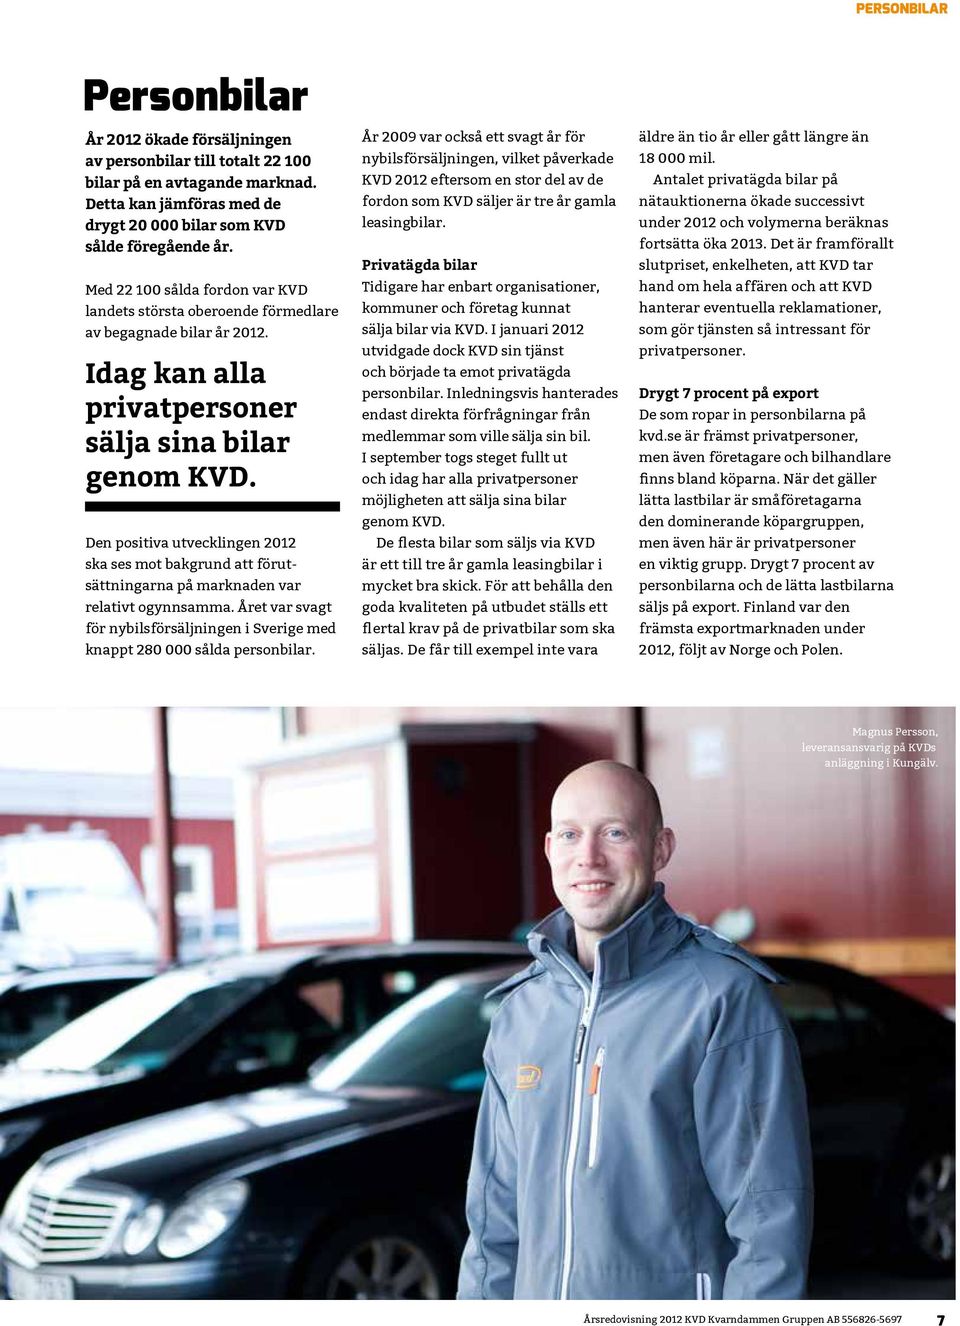 Den positiva utvecklingen 2012 ska ses mot bakgrund att förutsättningarna på marknaden var relativt ogynnsamma. Året var svagt för nybilsförsäljningen i Sverige med knappt 280 000 sålda person bilar.